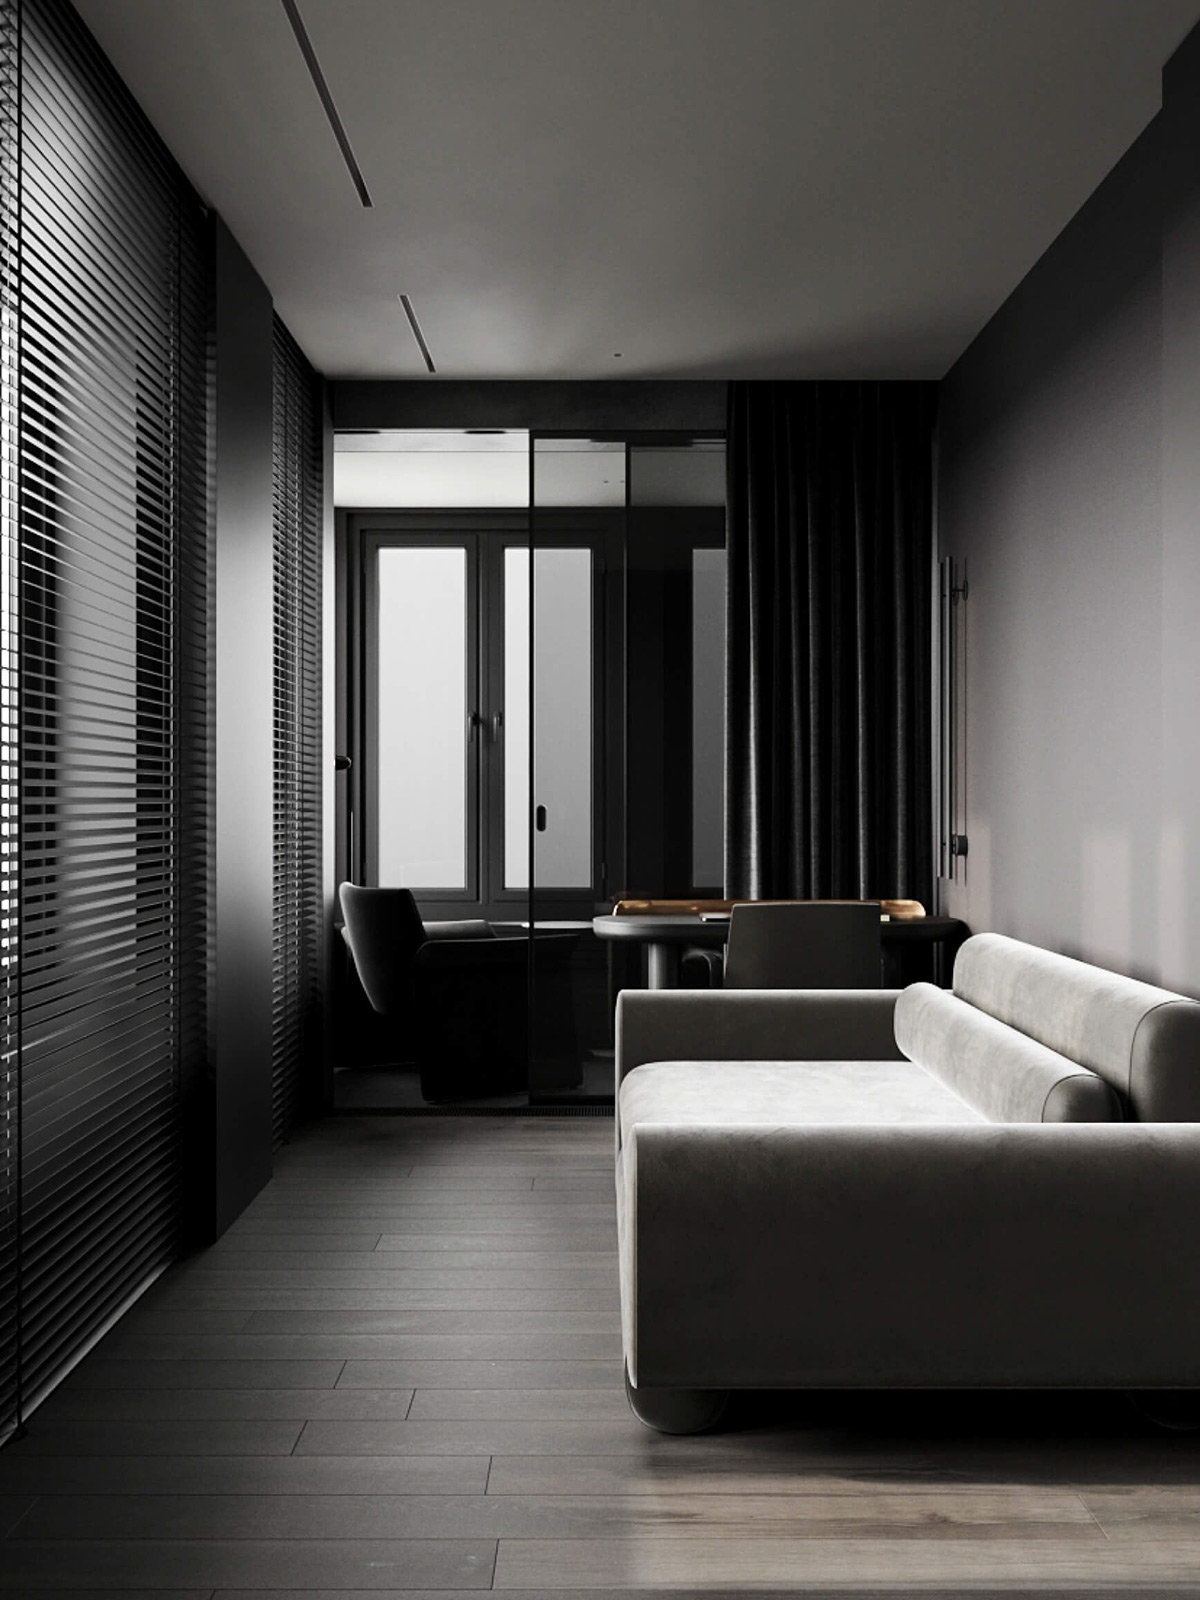 sophisticated gray scale monochromatic interior design 3